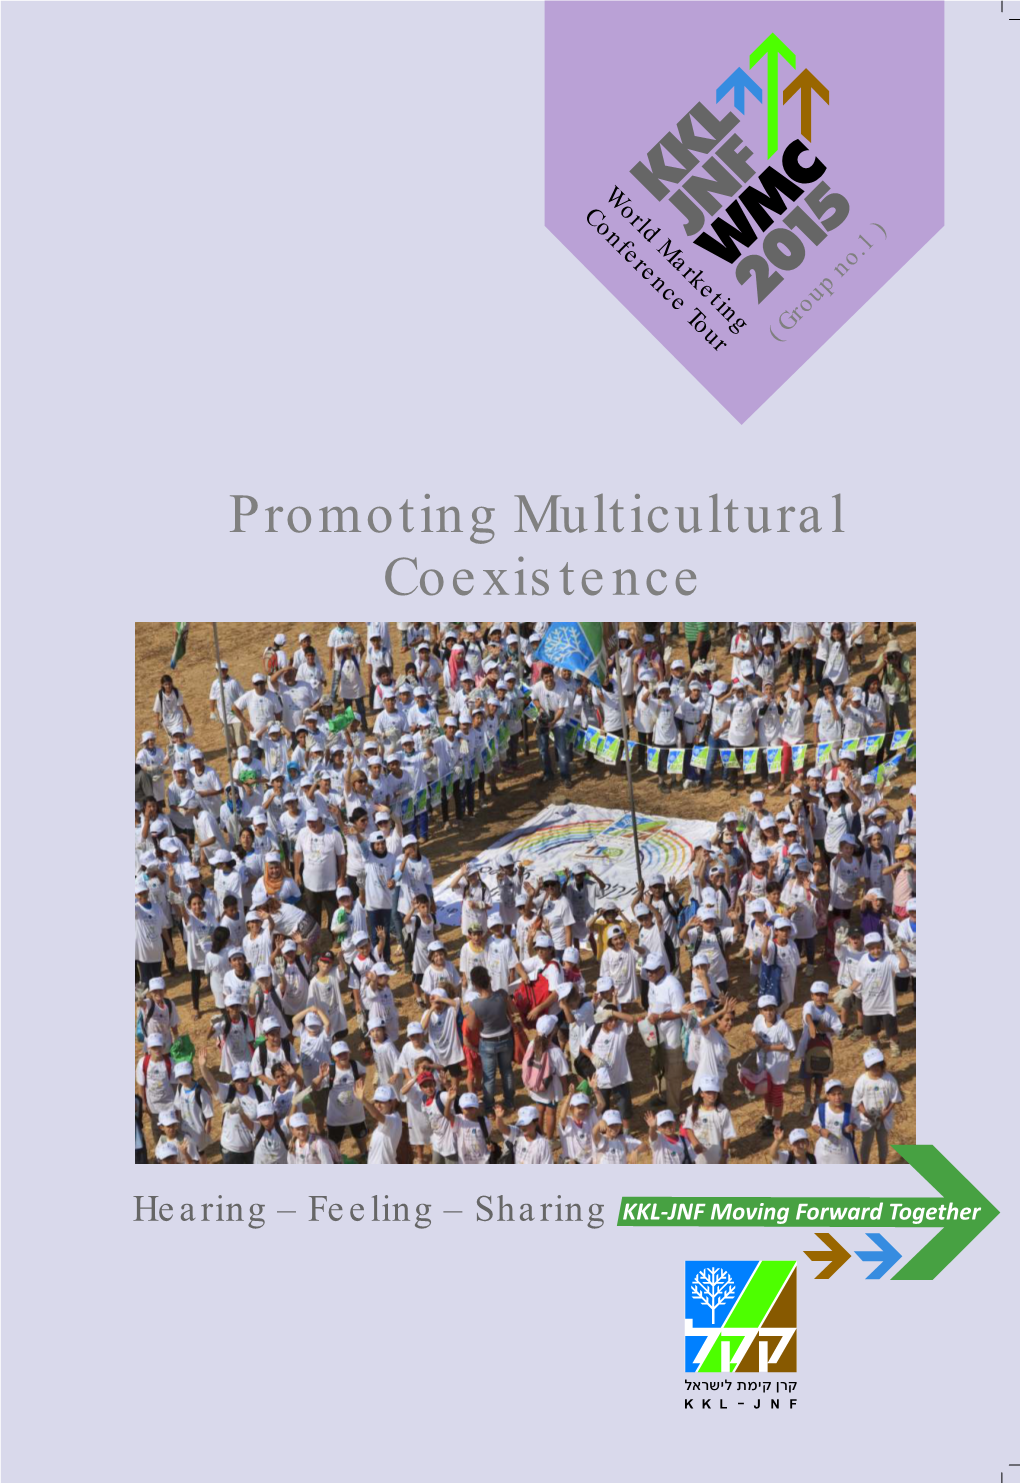 KKL-JNF Promoting Multicultural Coexistence